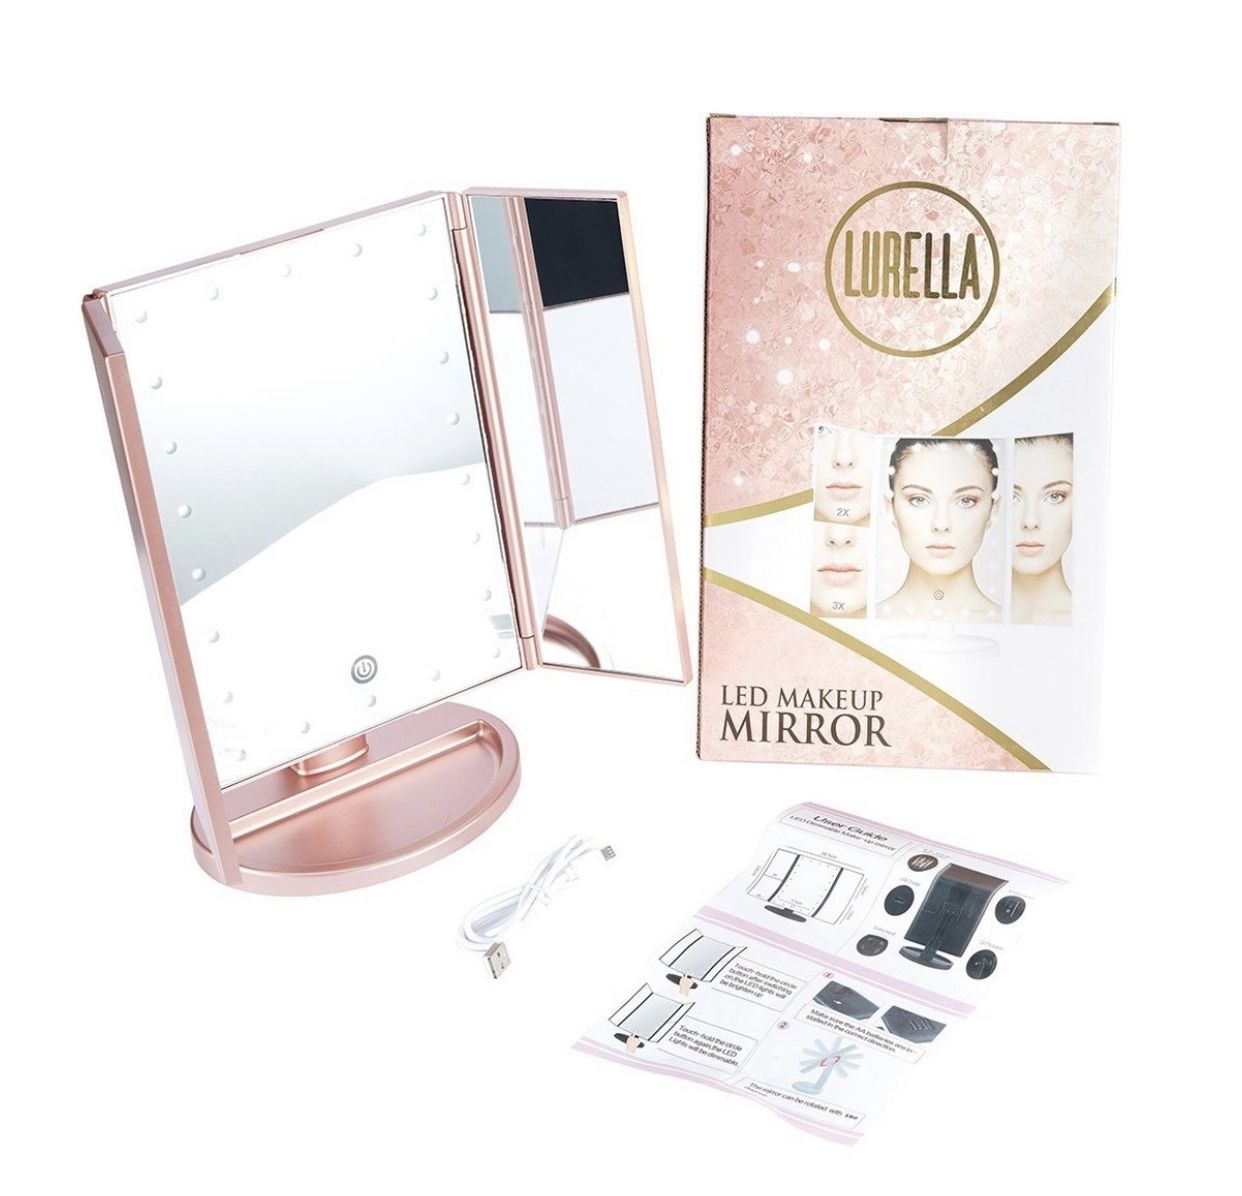 Lurella Led Makeup Mirror